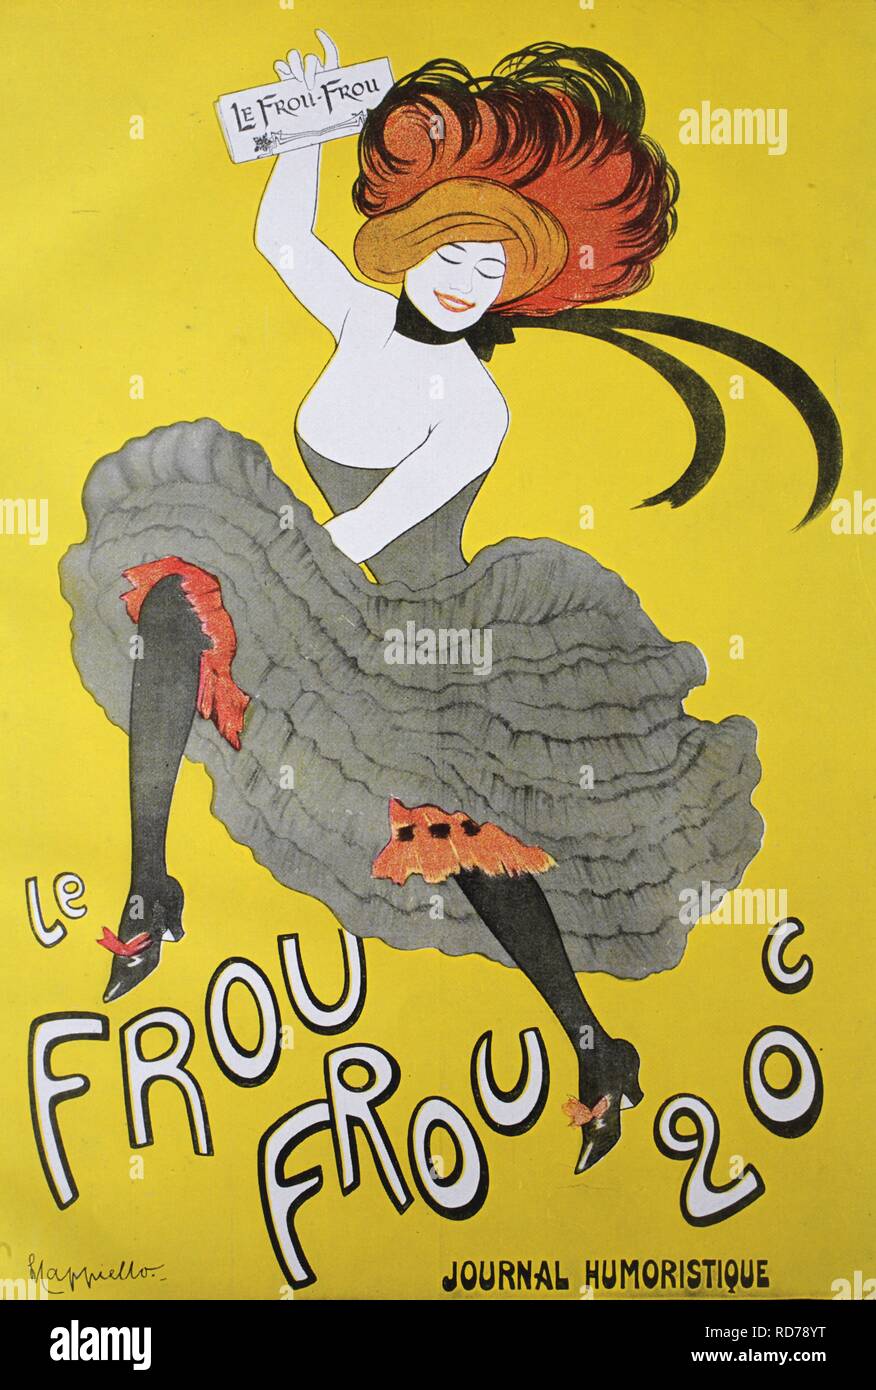 Historische Werbung Plakat für die französische Zeitung 'Frou - Frou' von Capiello, um 1880 Stockfoto